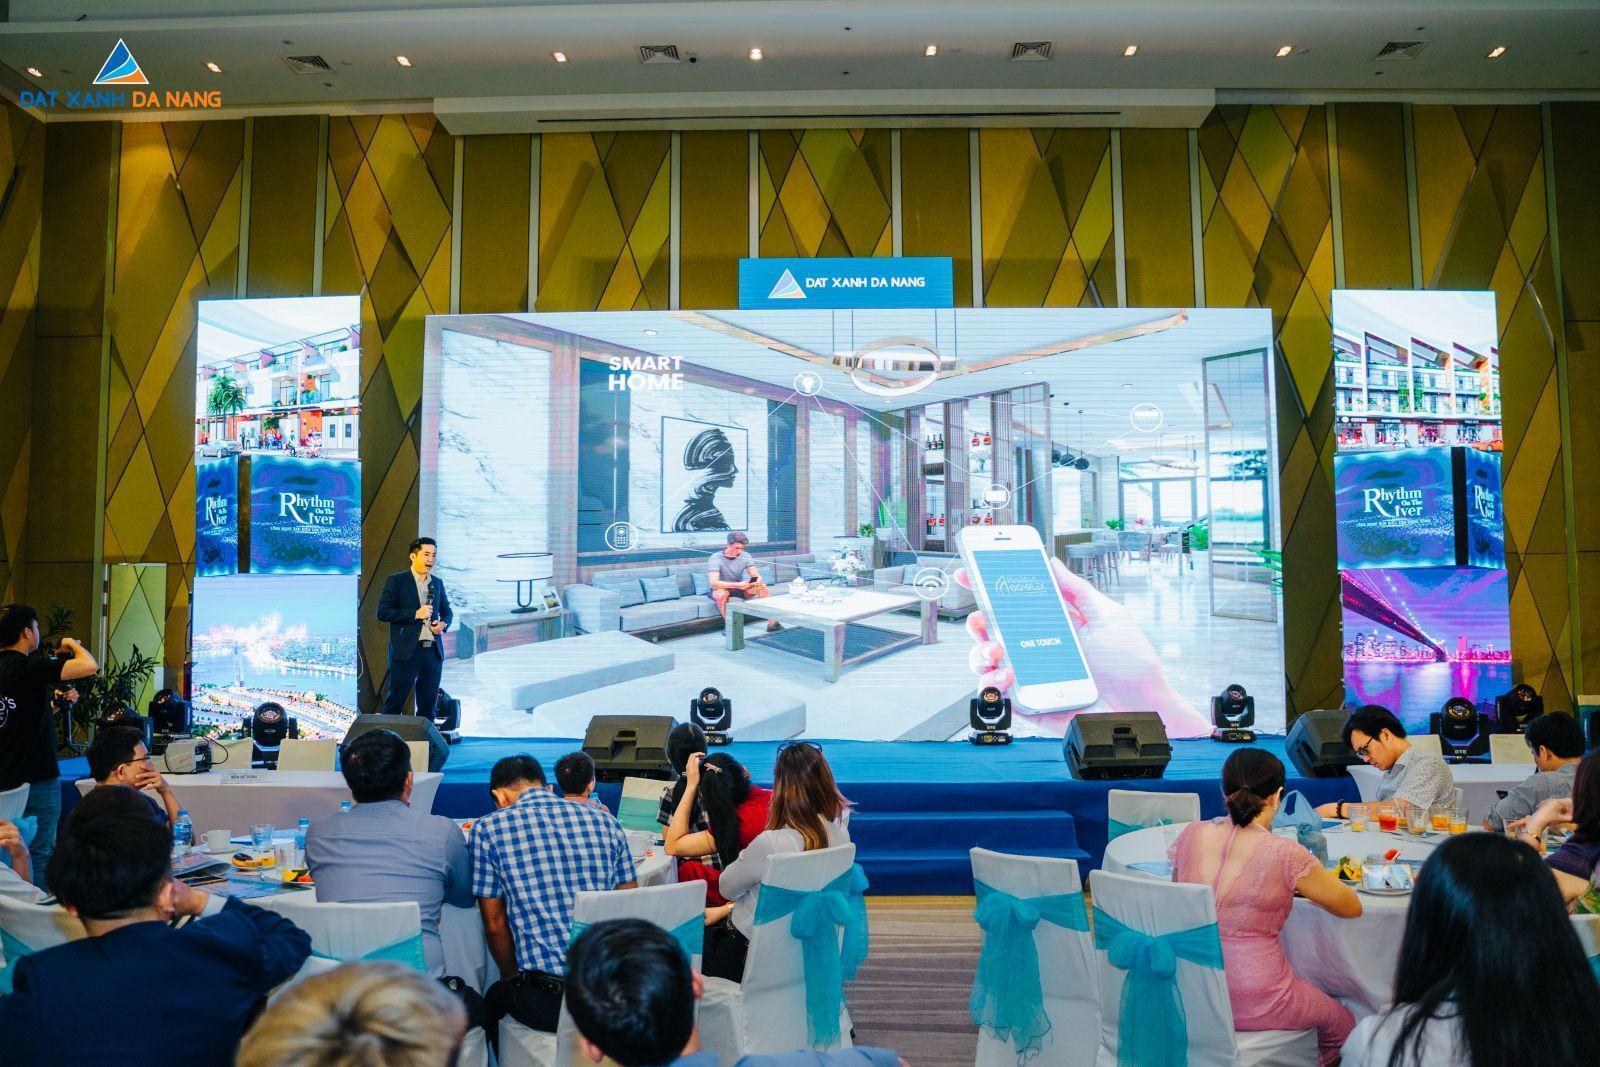 BẤT ĐỘNG SẢN VEN SÔNG ĐANG TẠO NÊN CƠN SỐT THỊ TRƯỜNG TẠI ĐÀ NẴNG - Viet Nam Smart City